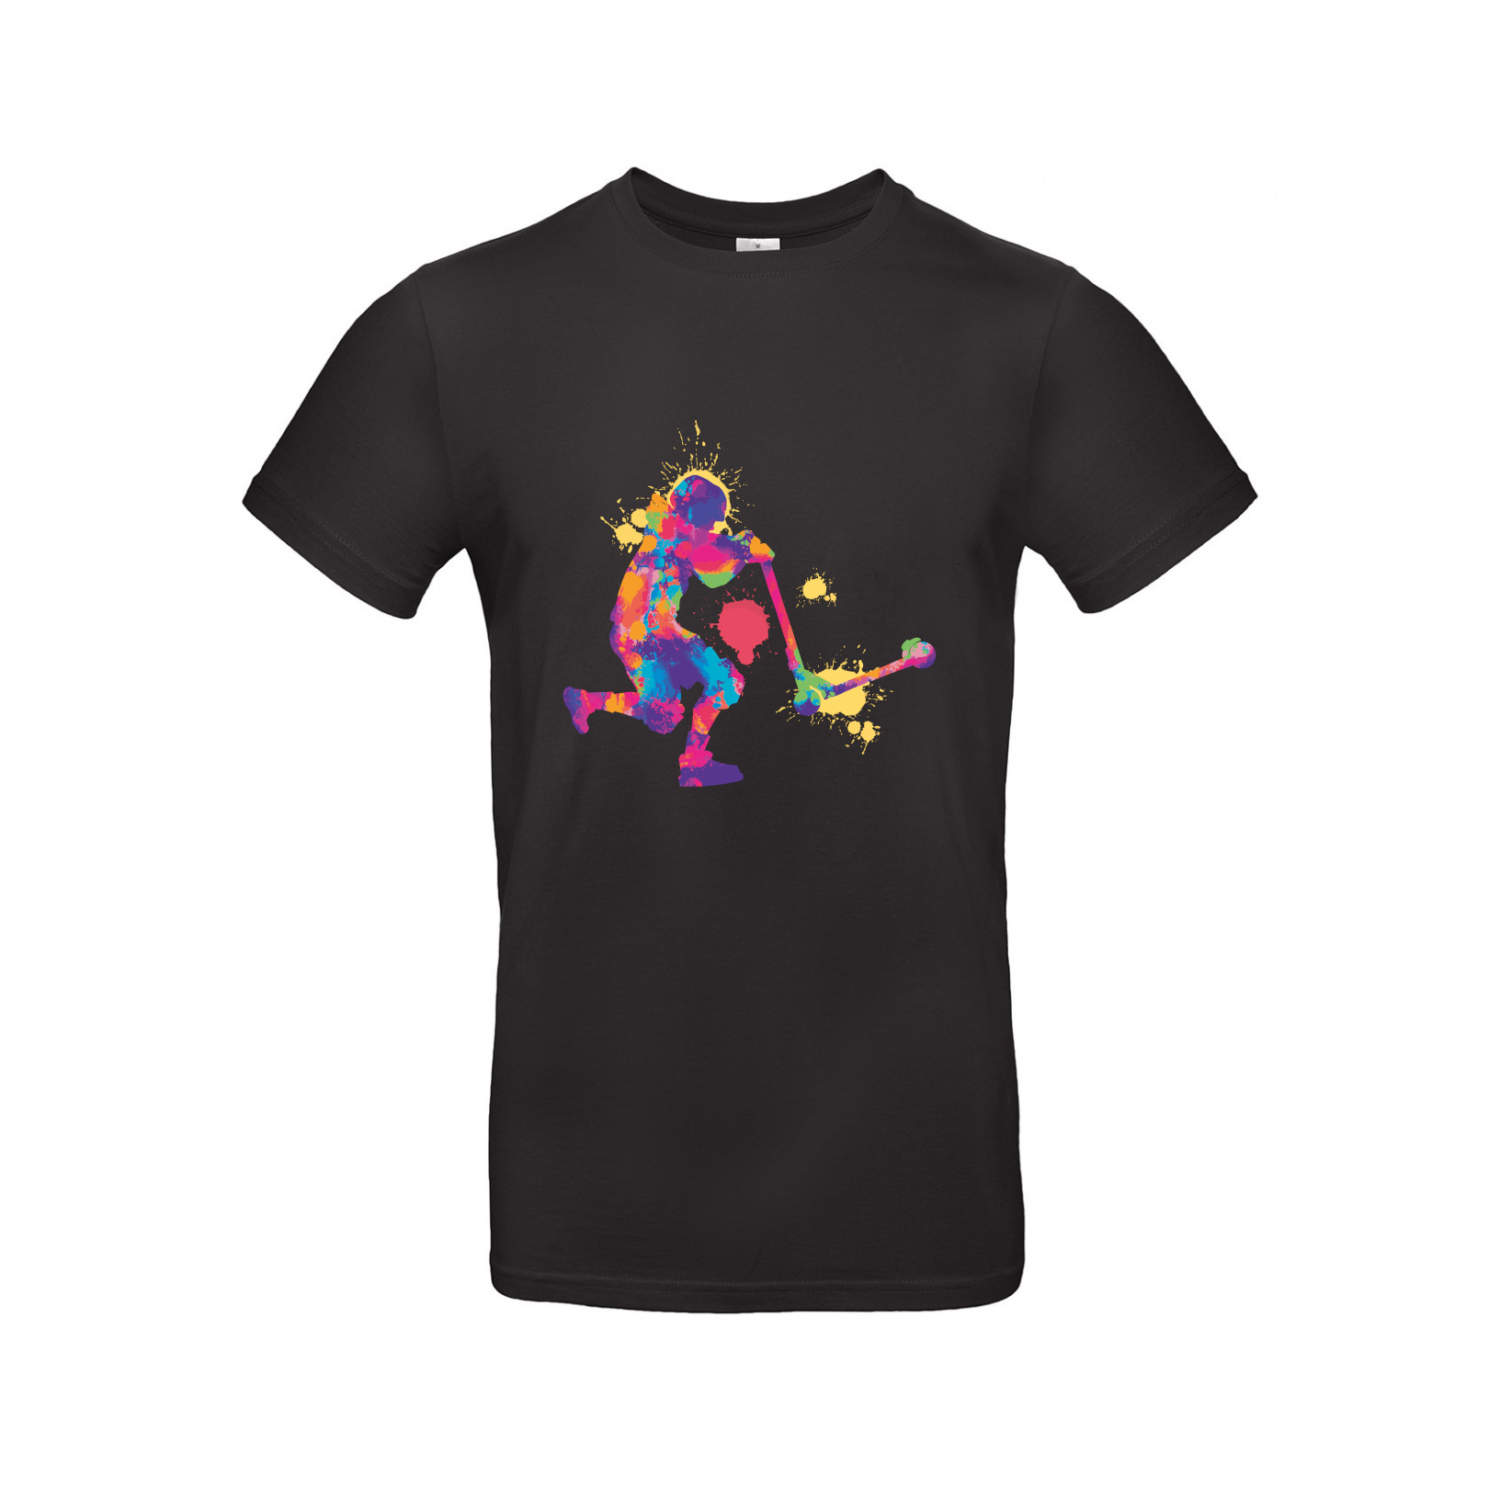 T-Shirt | Farbiger Scooter Jump - Herren T-Shirt